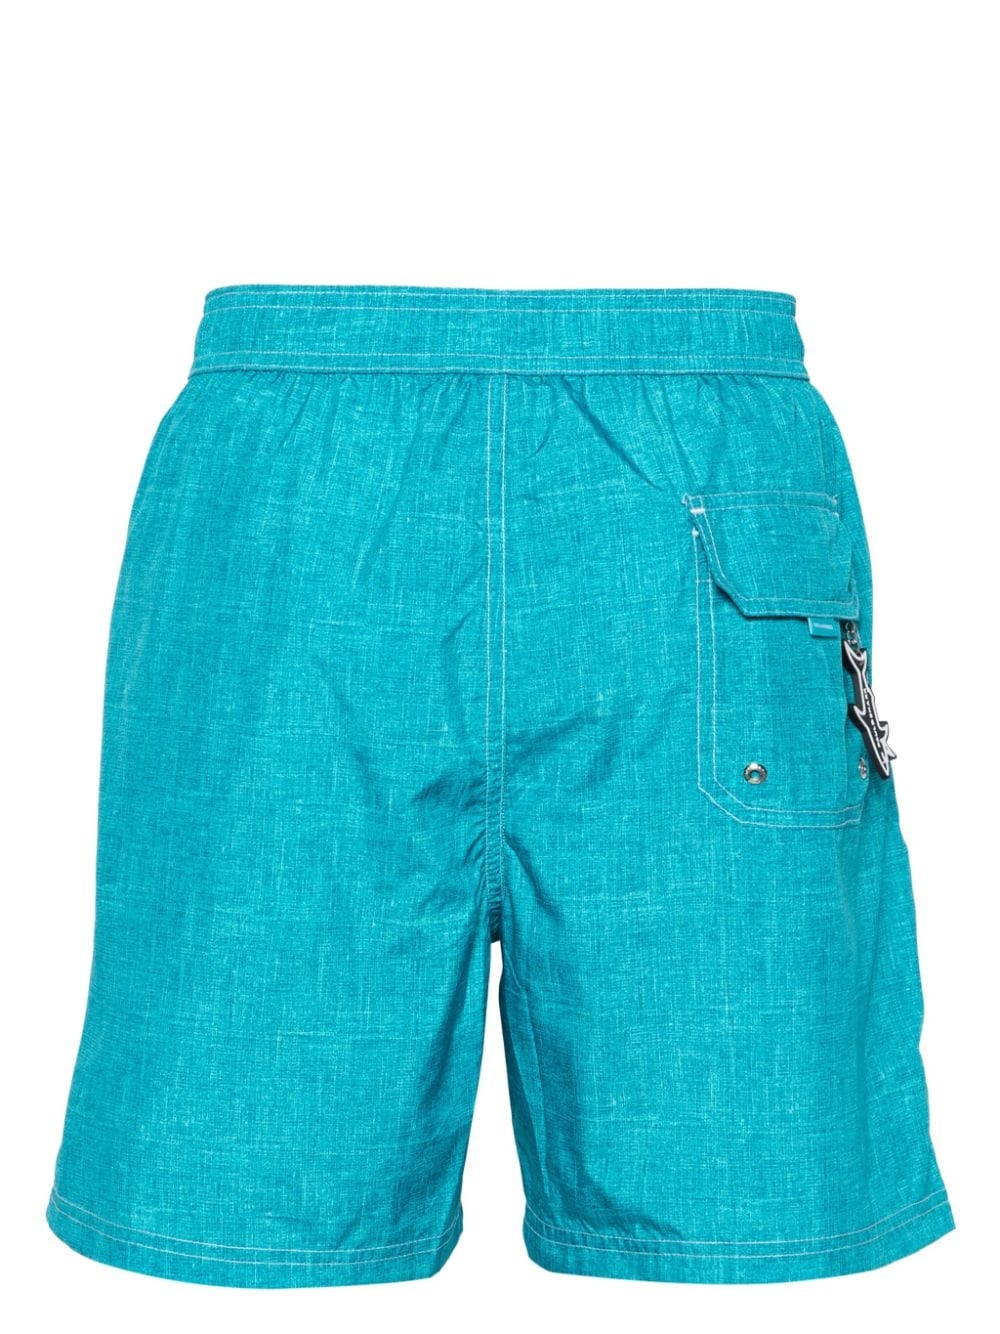 shark-charm textil-print swim shorts - 2